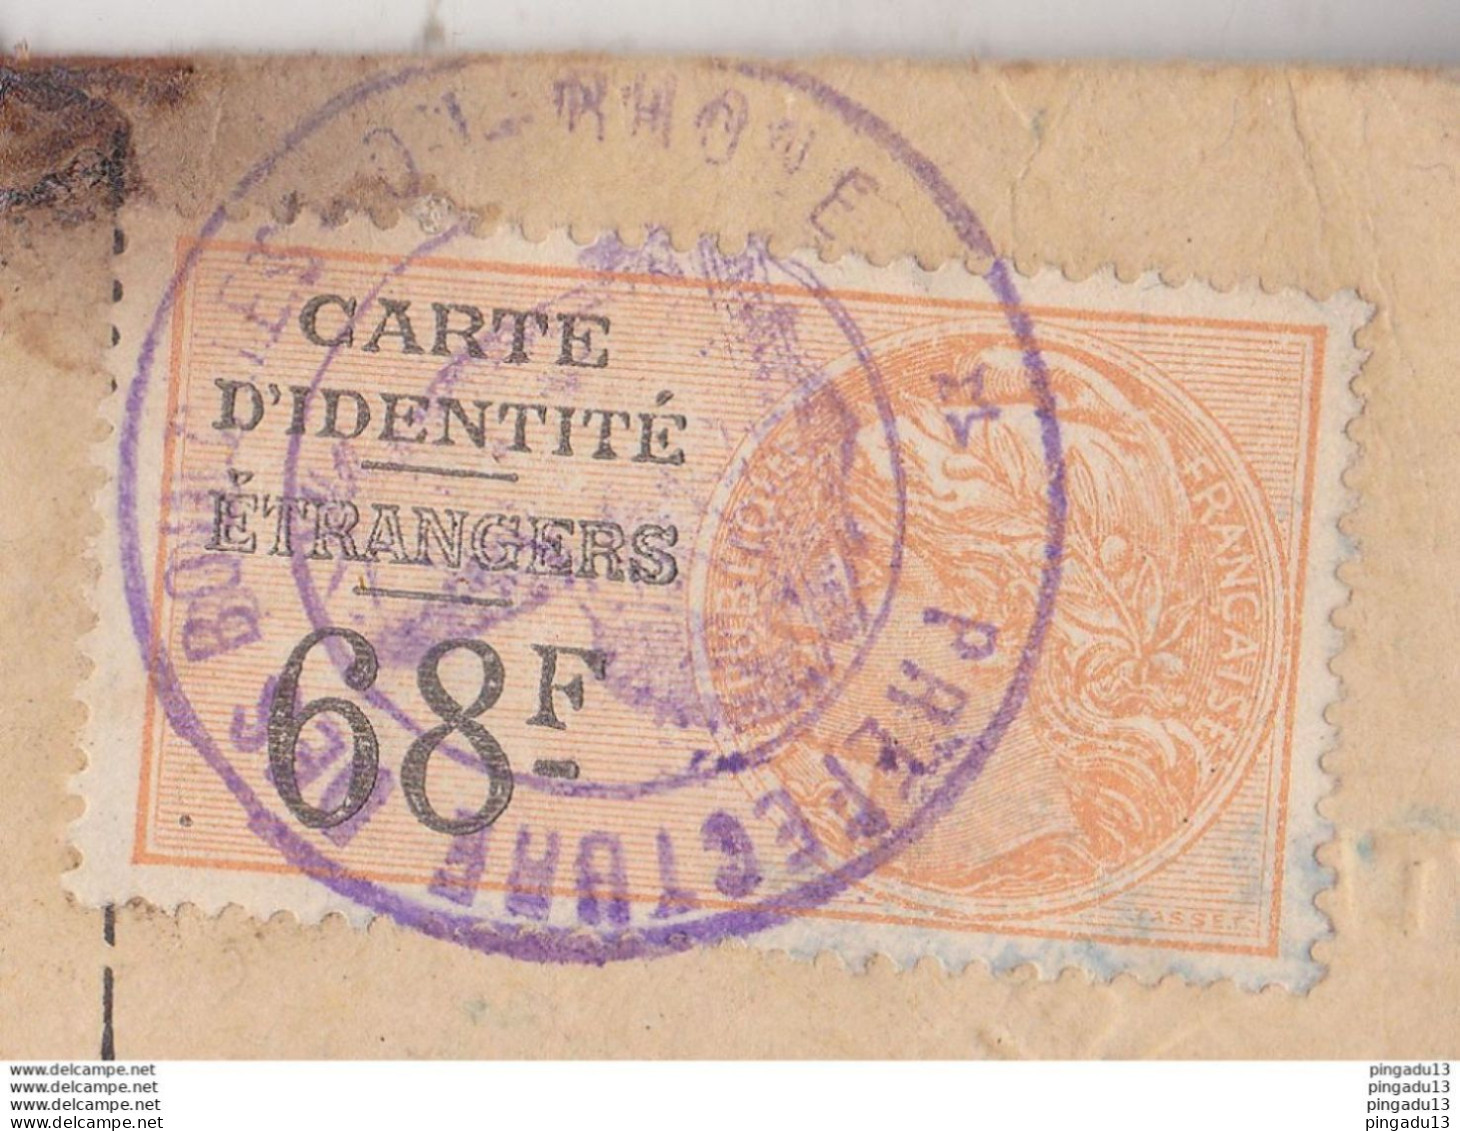 Fixe Timbre Fiscal Carte D'identité étrangers Russe Russie Tver Batoum Bouches Du Rhône 20 Janv 1926 Taxe Pleine - Lettres & Documents